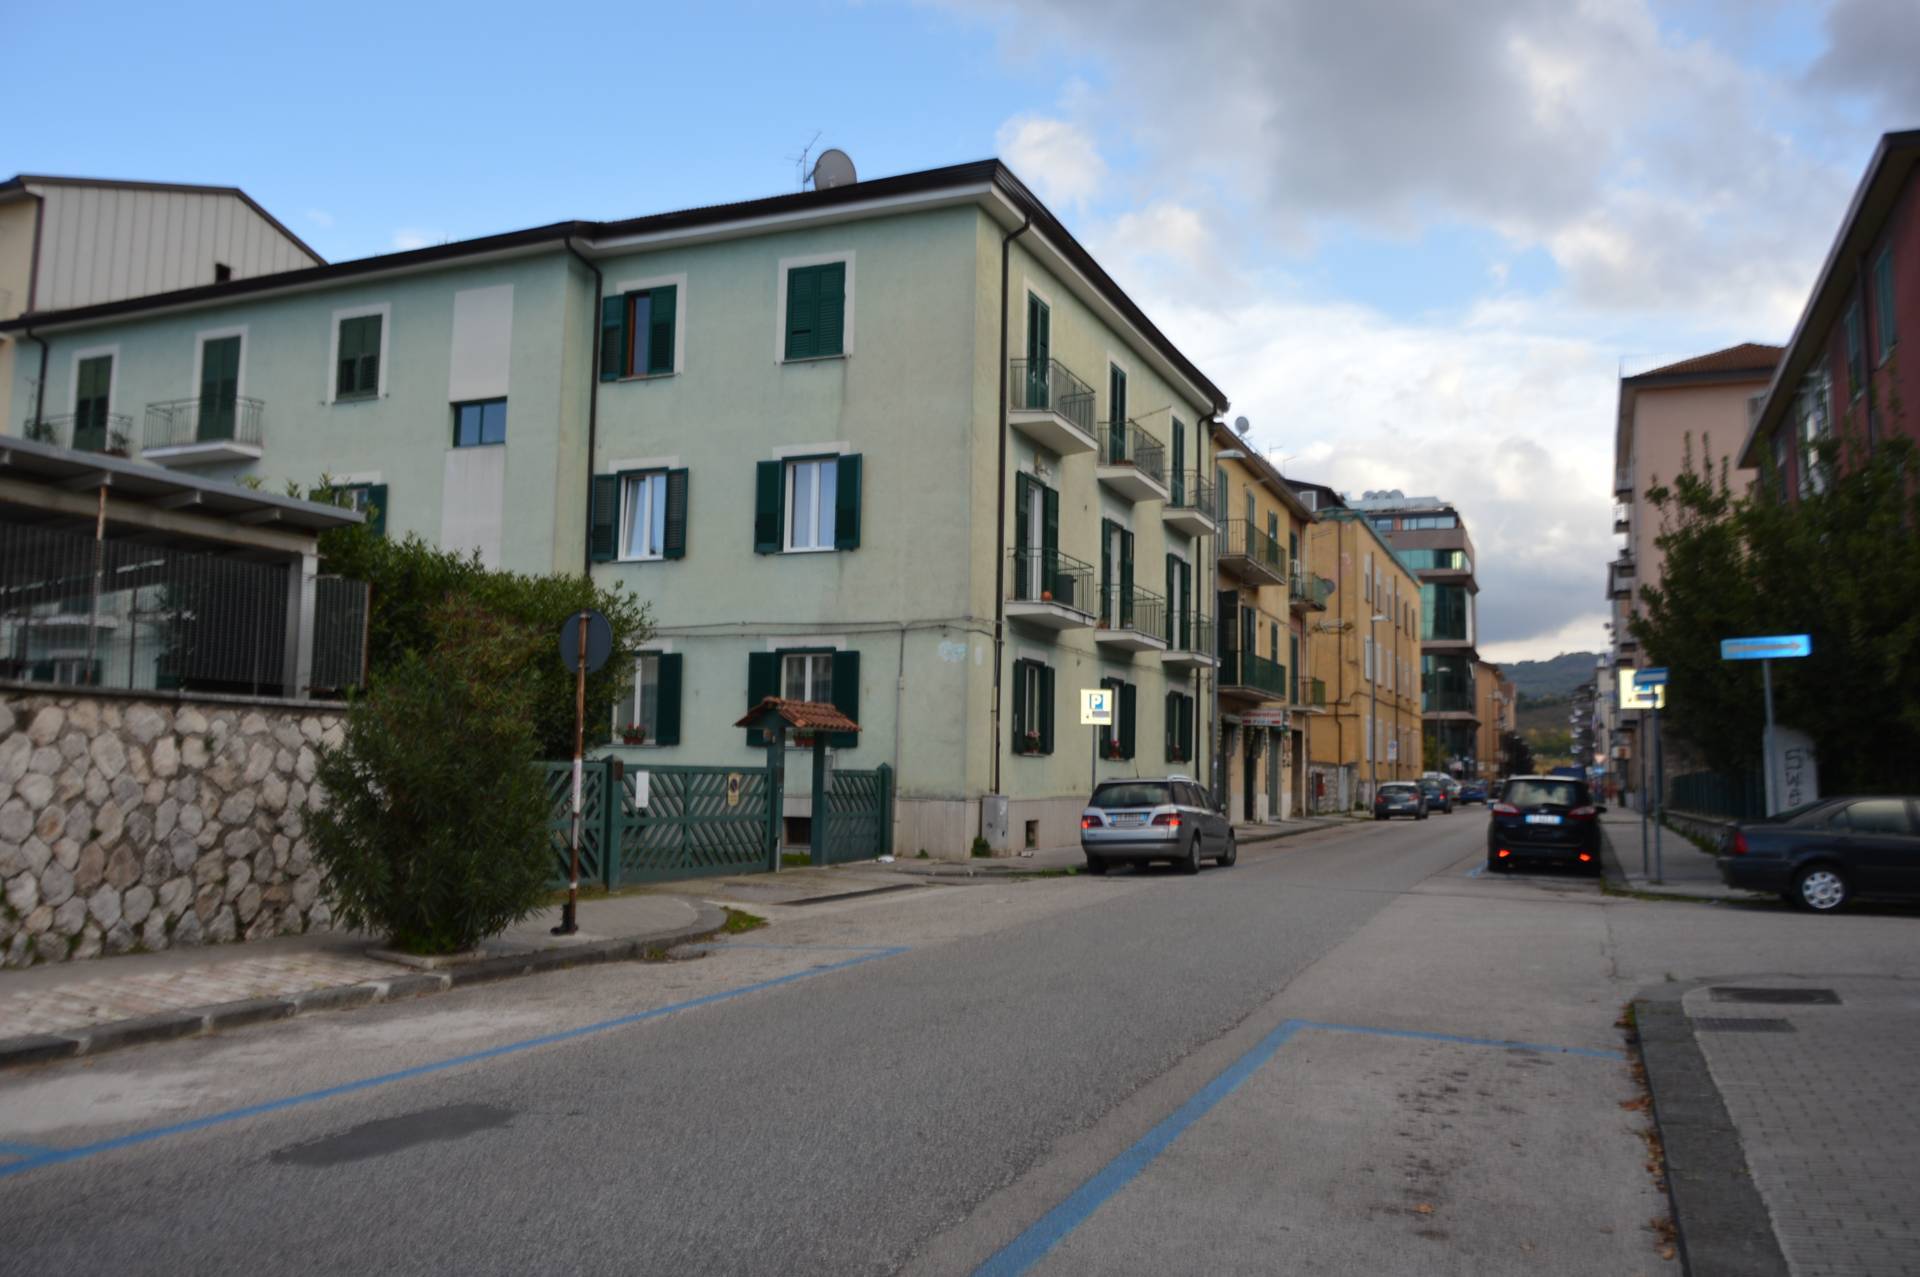 Locale commerciale in affitto, Avellino v.le italia